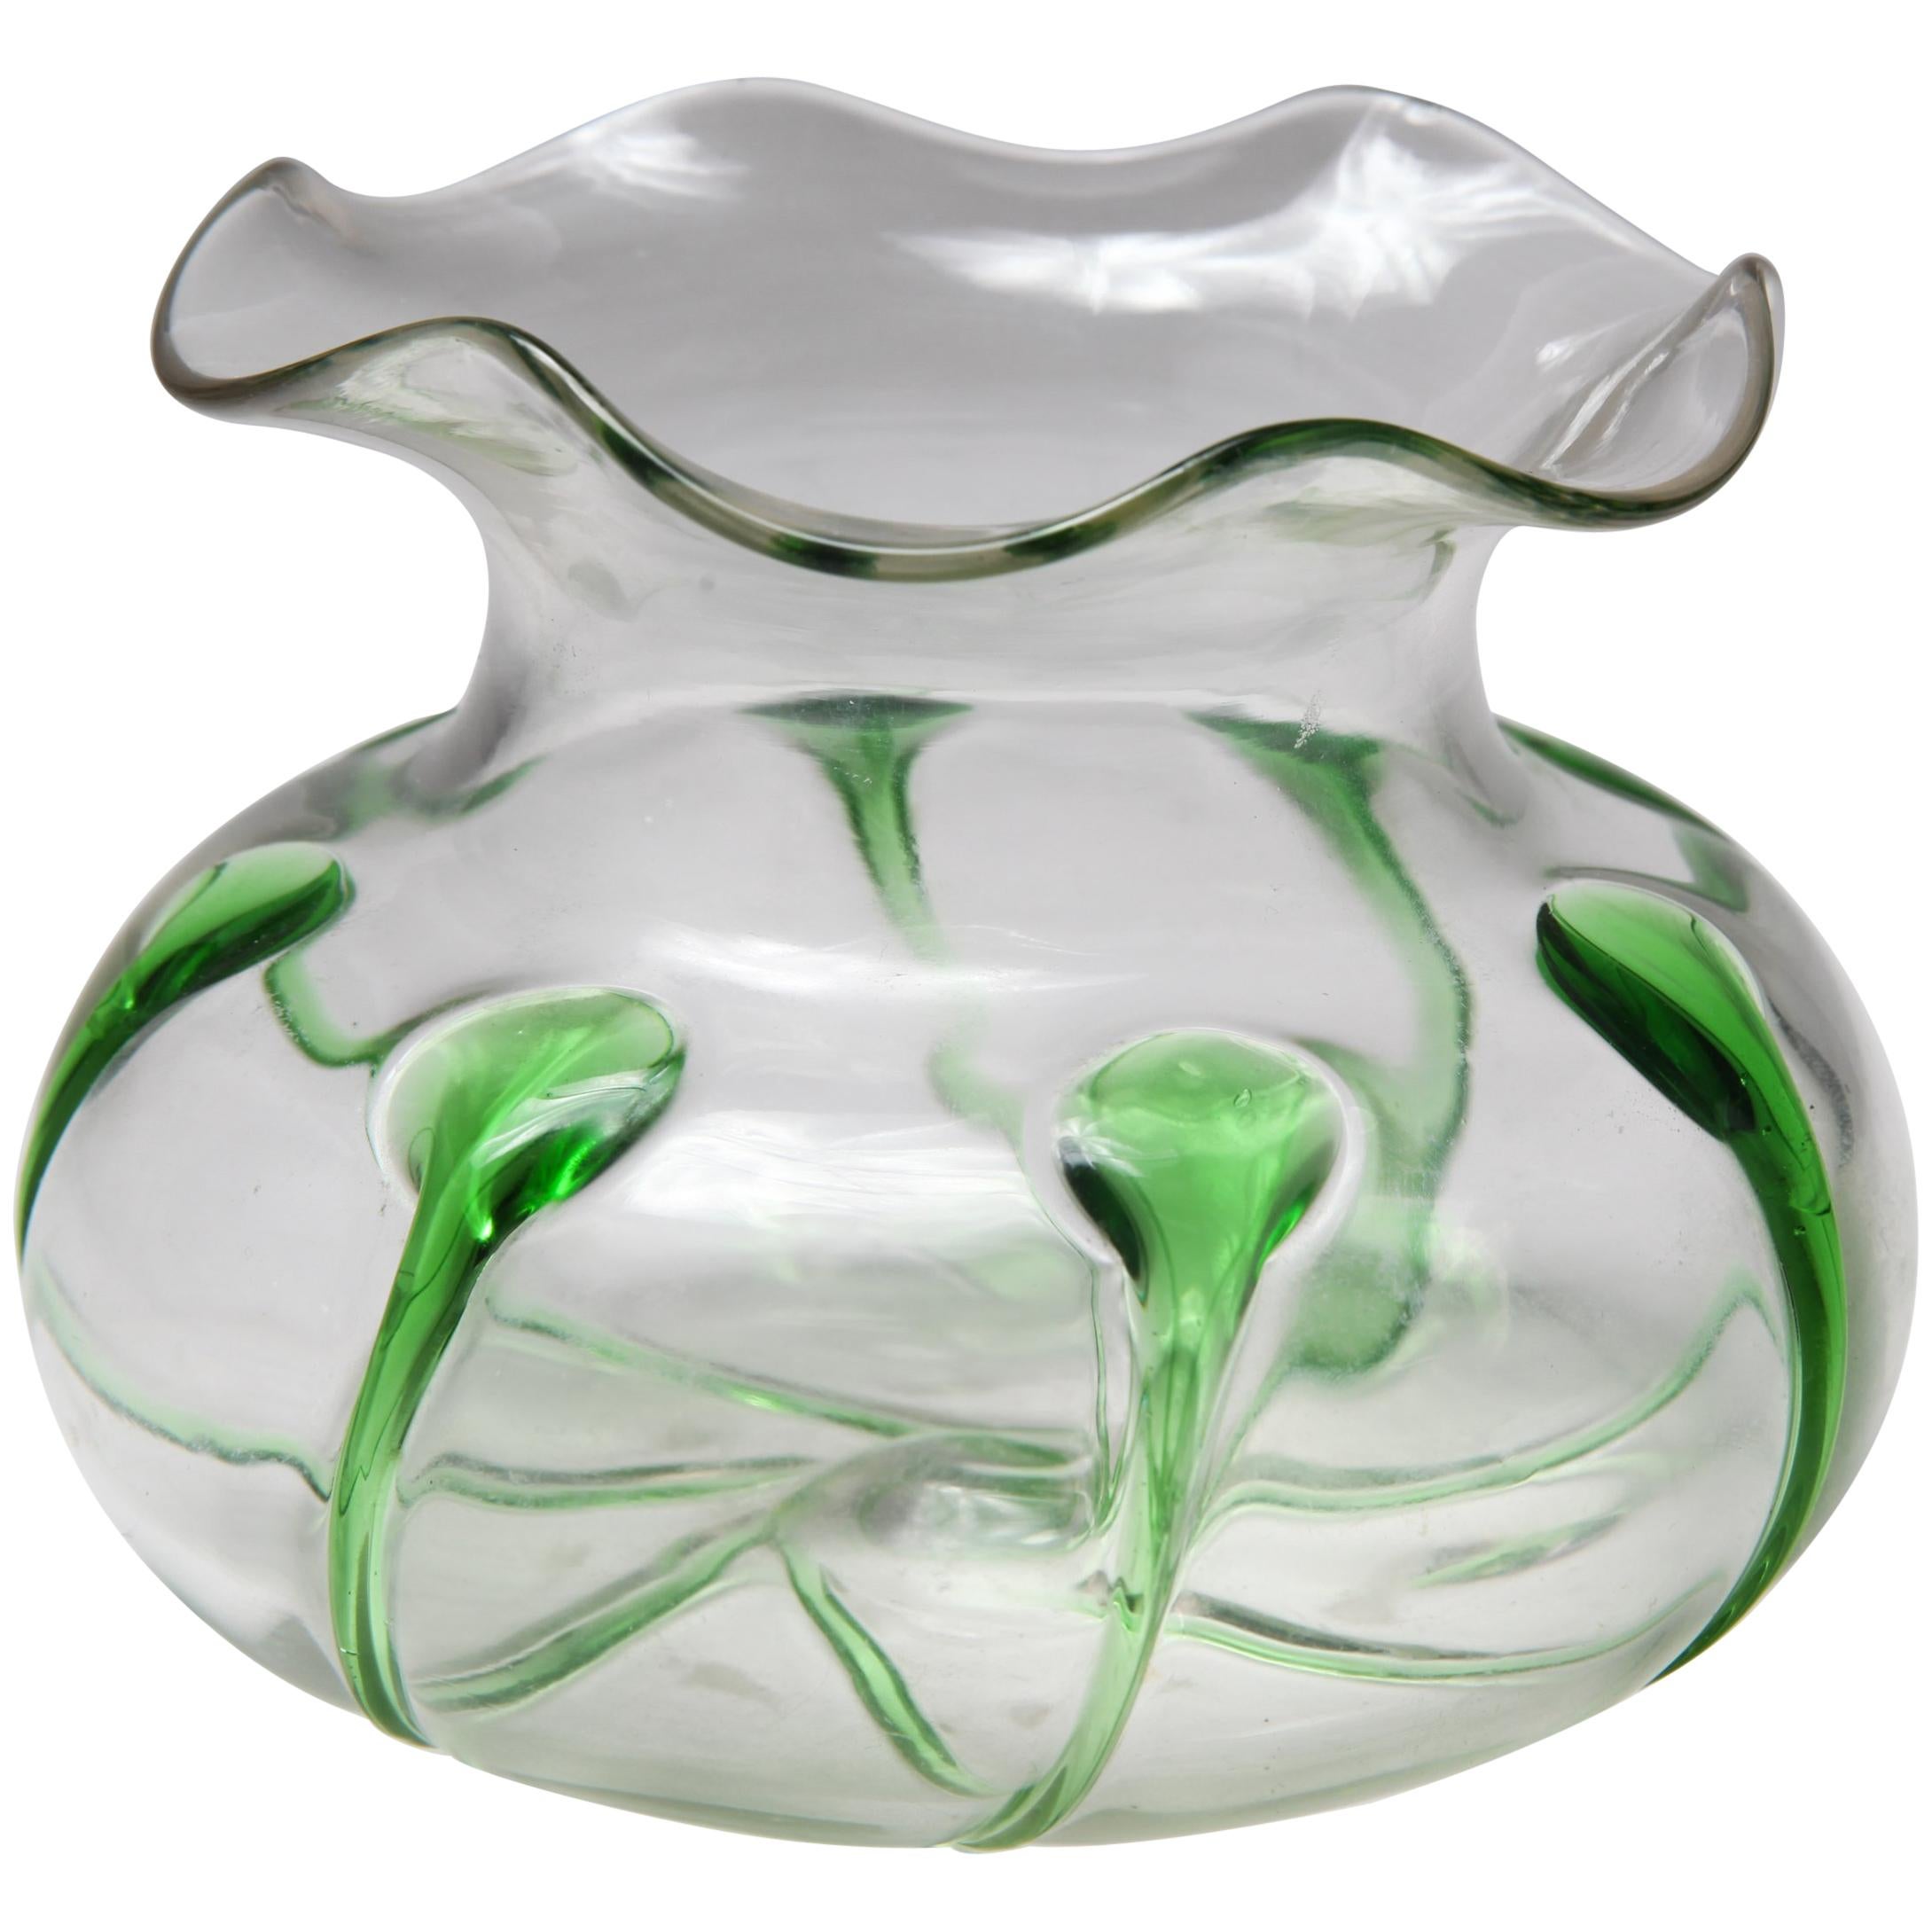 Glasschale im Jugendstil im Art nouveau-Stil mit grünen Akzenten